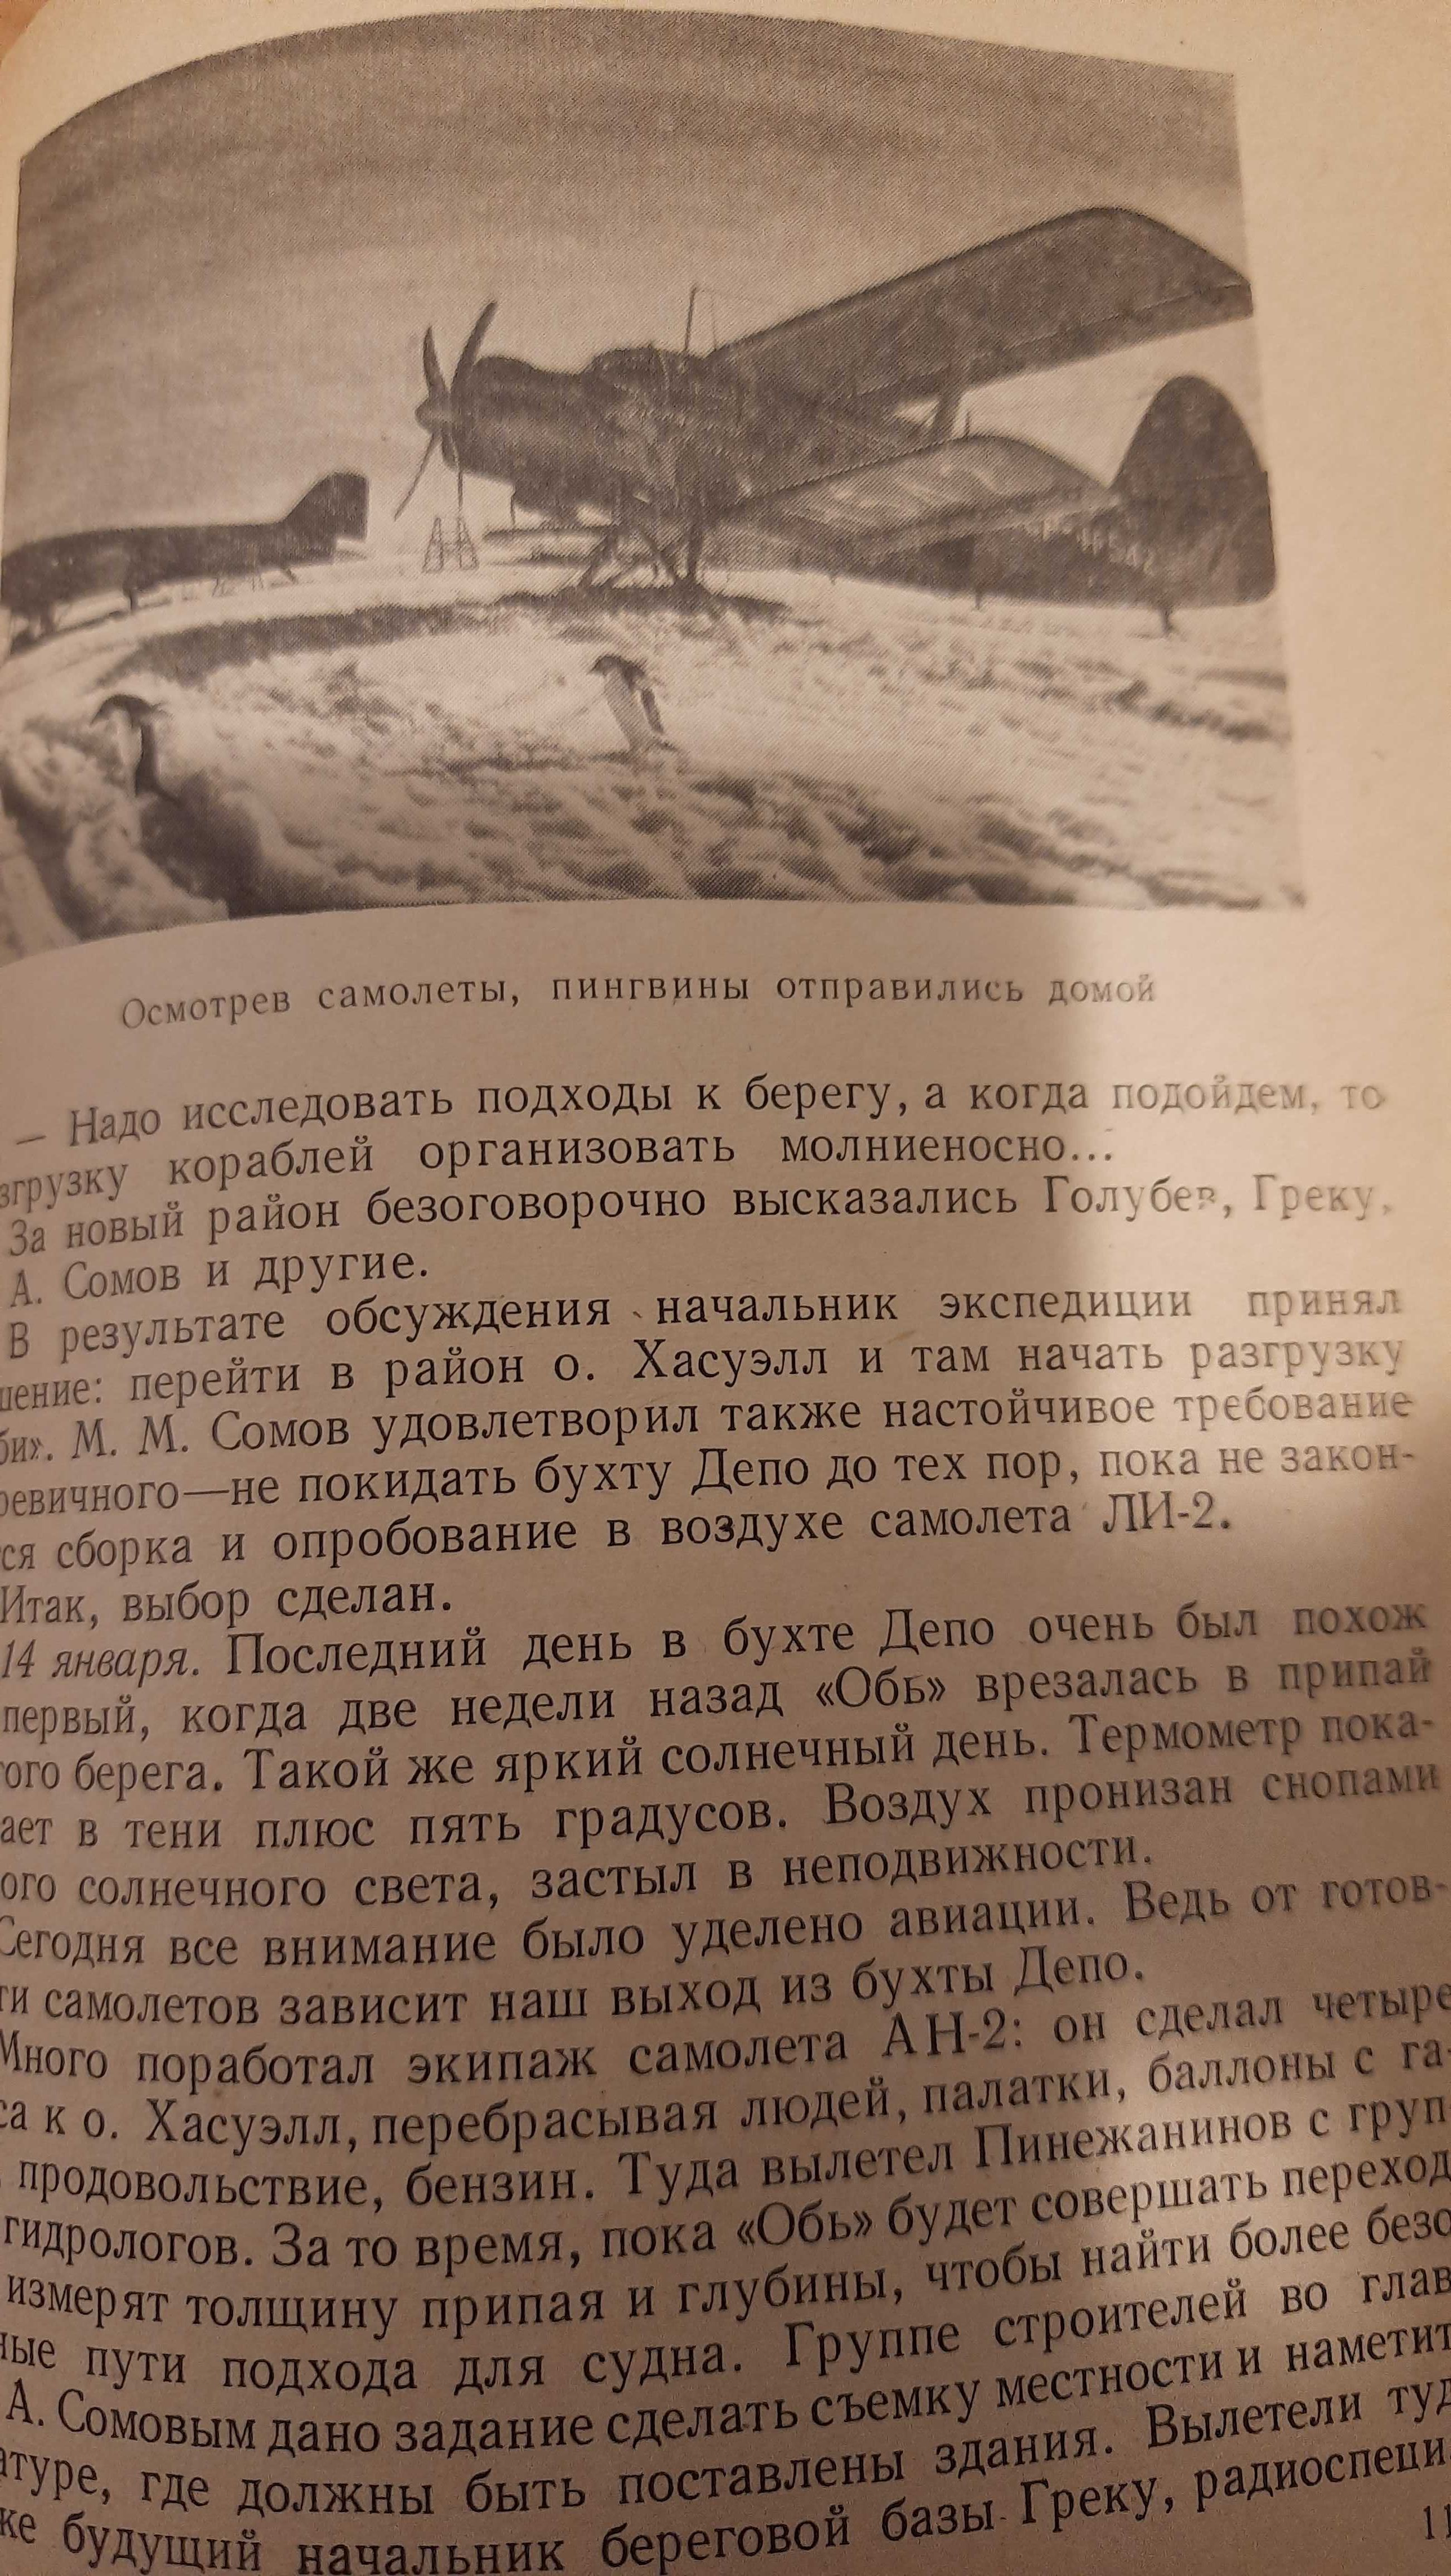 К шестому материку  Сузюмов, Е.М. 1958 г